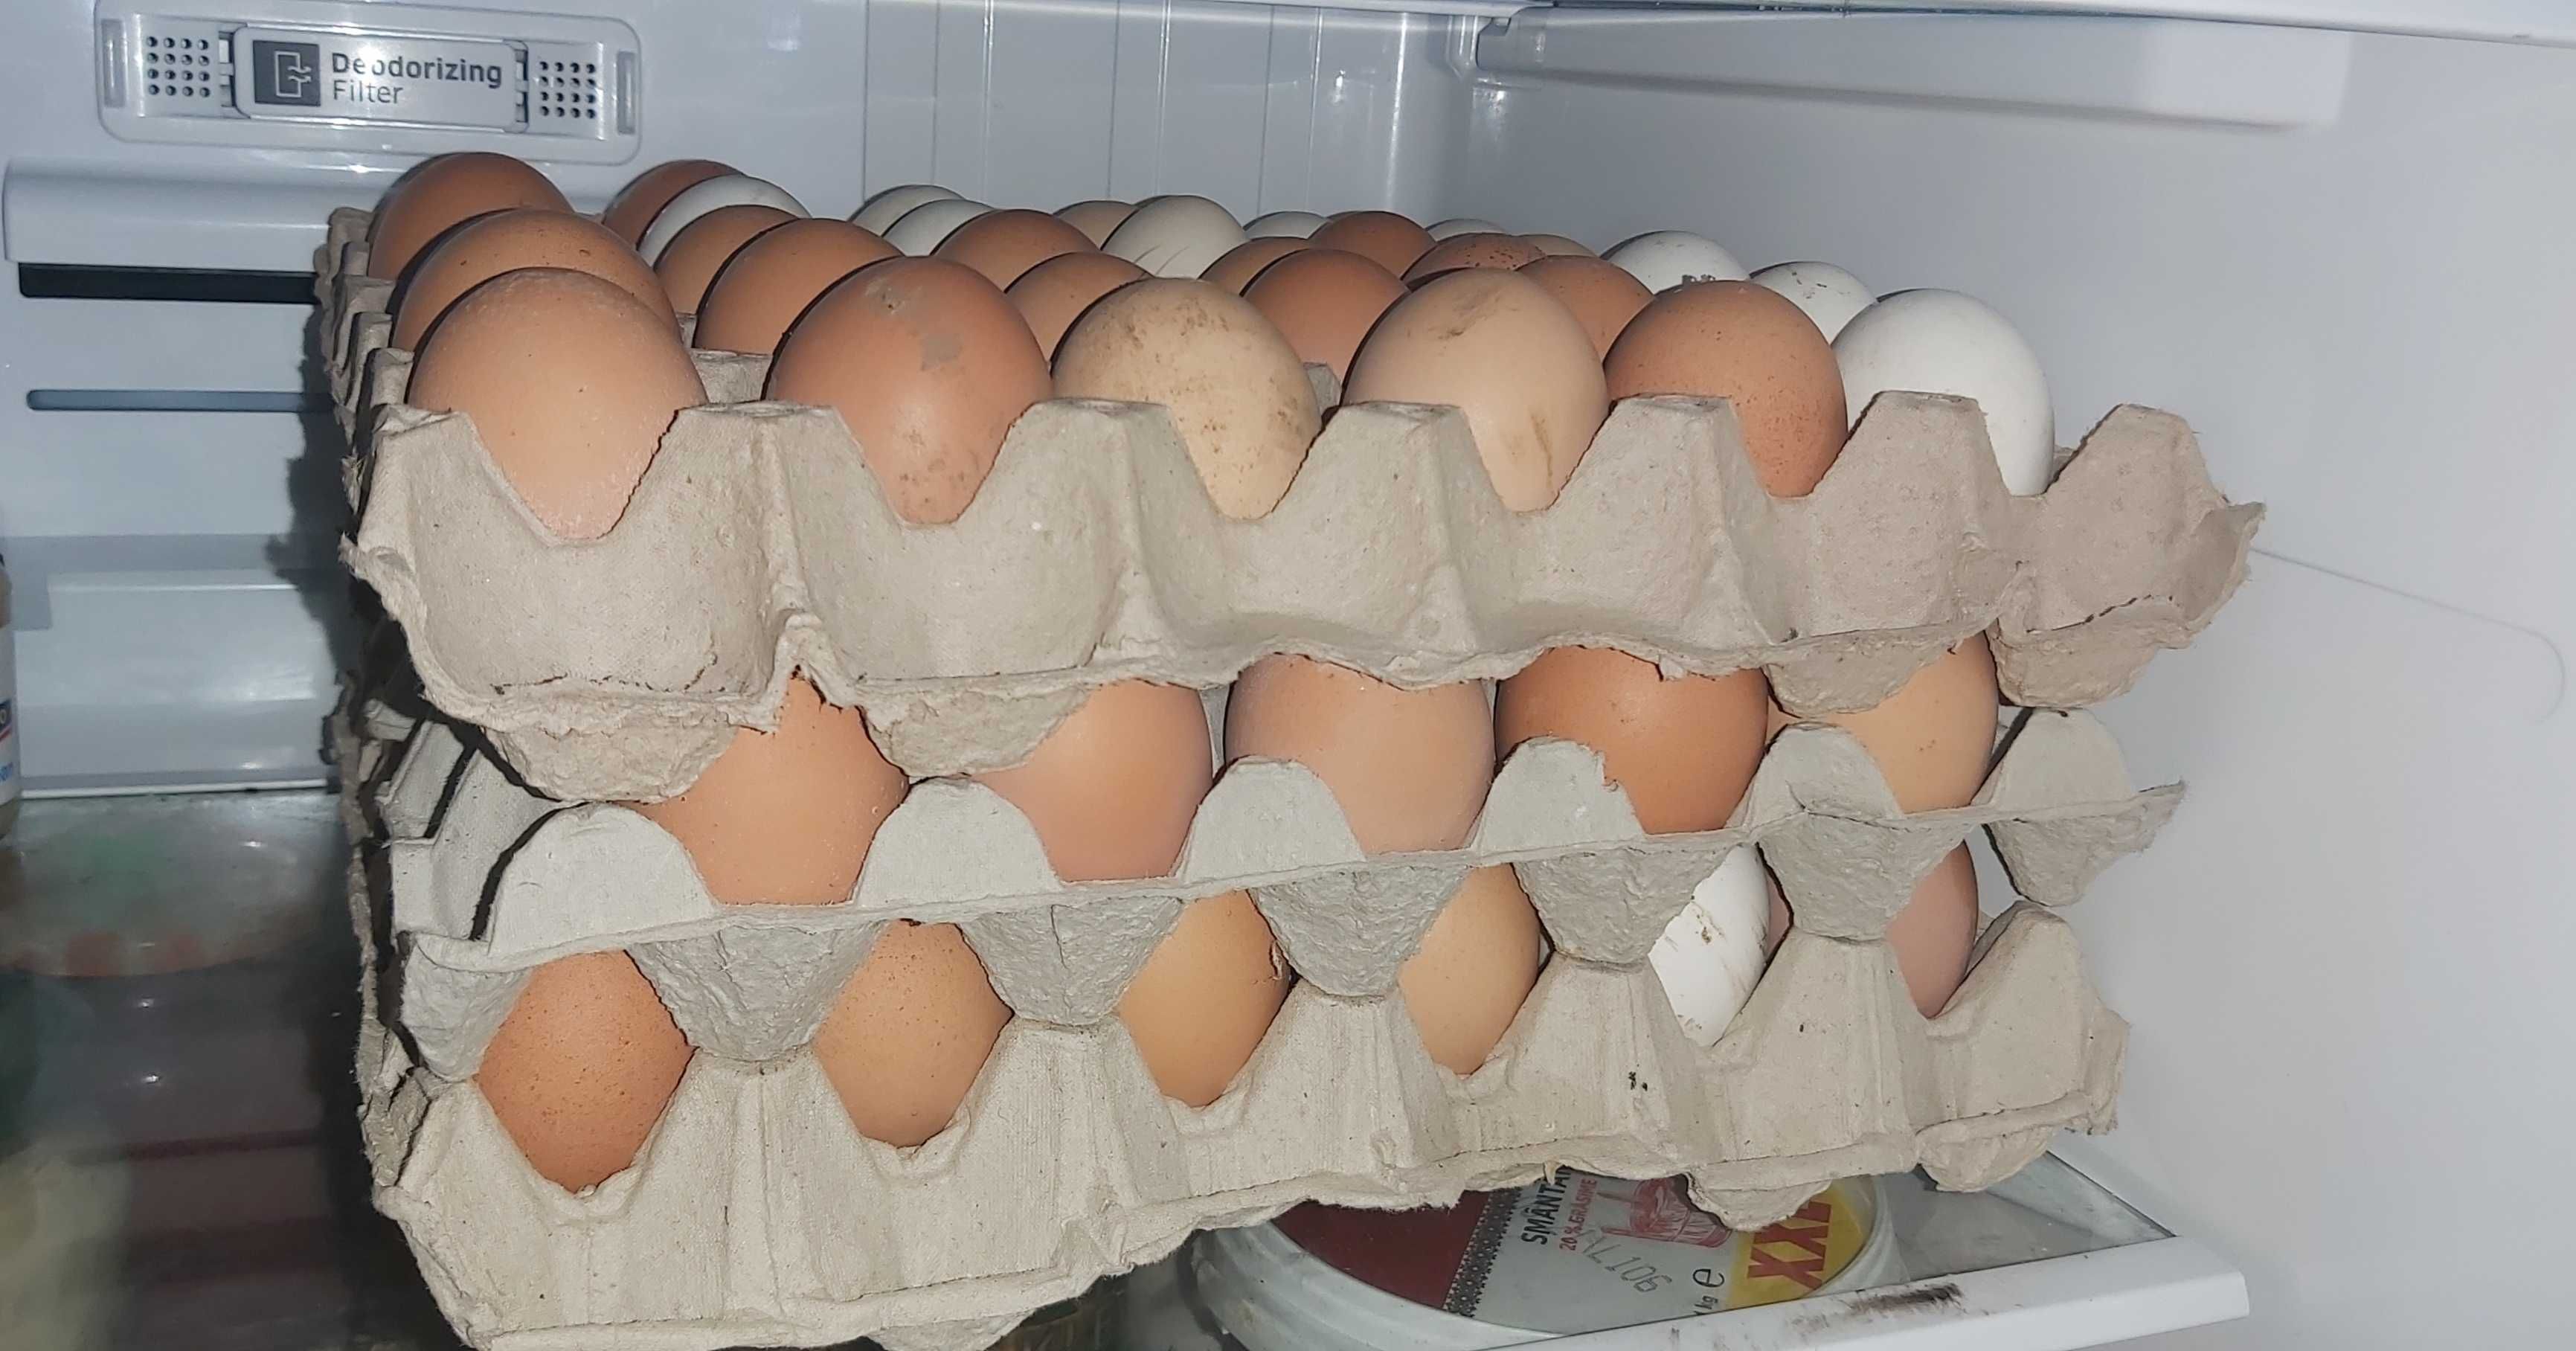 Oua de găină proaspete de consum